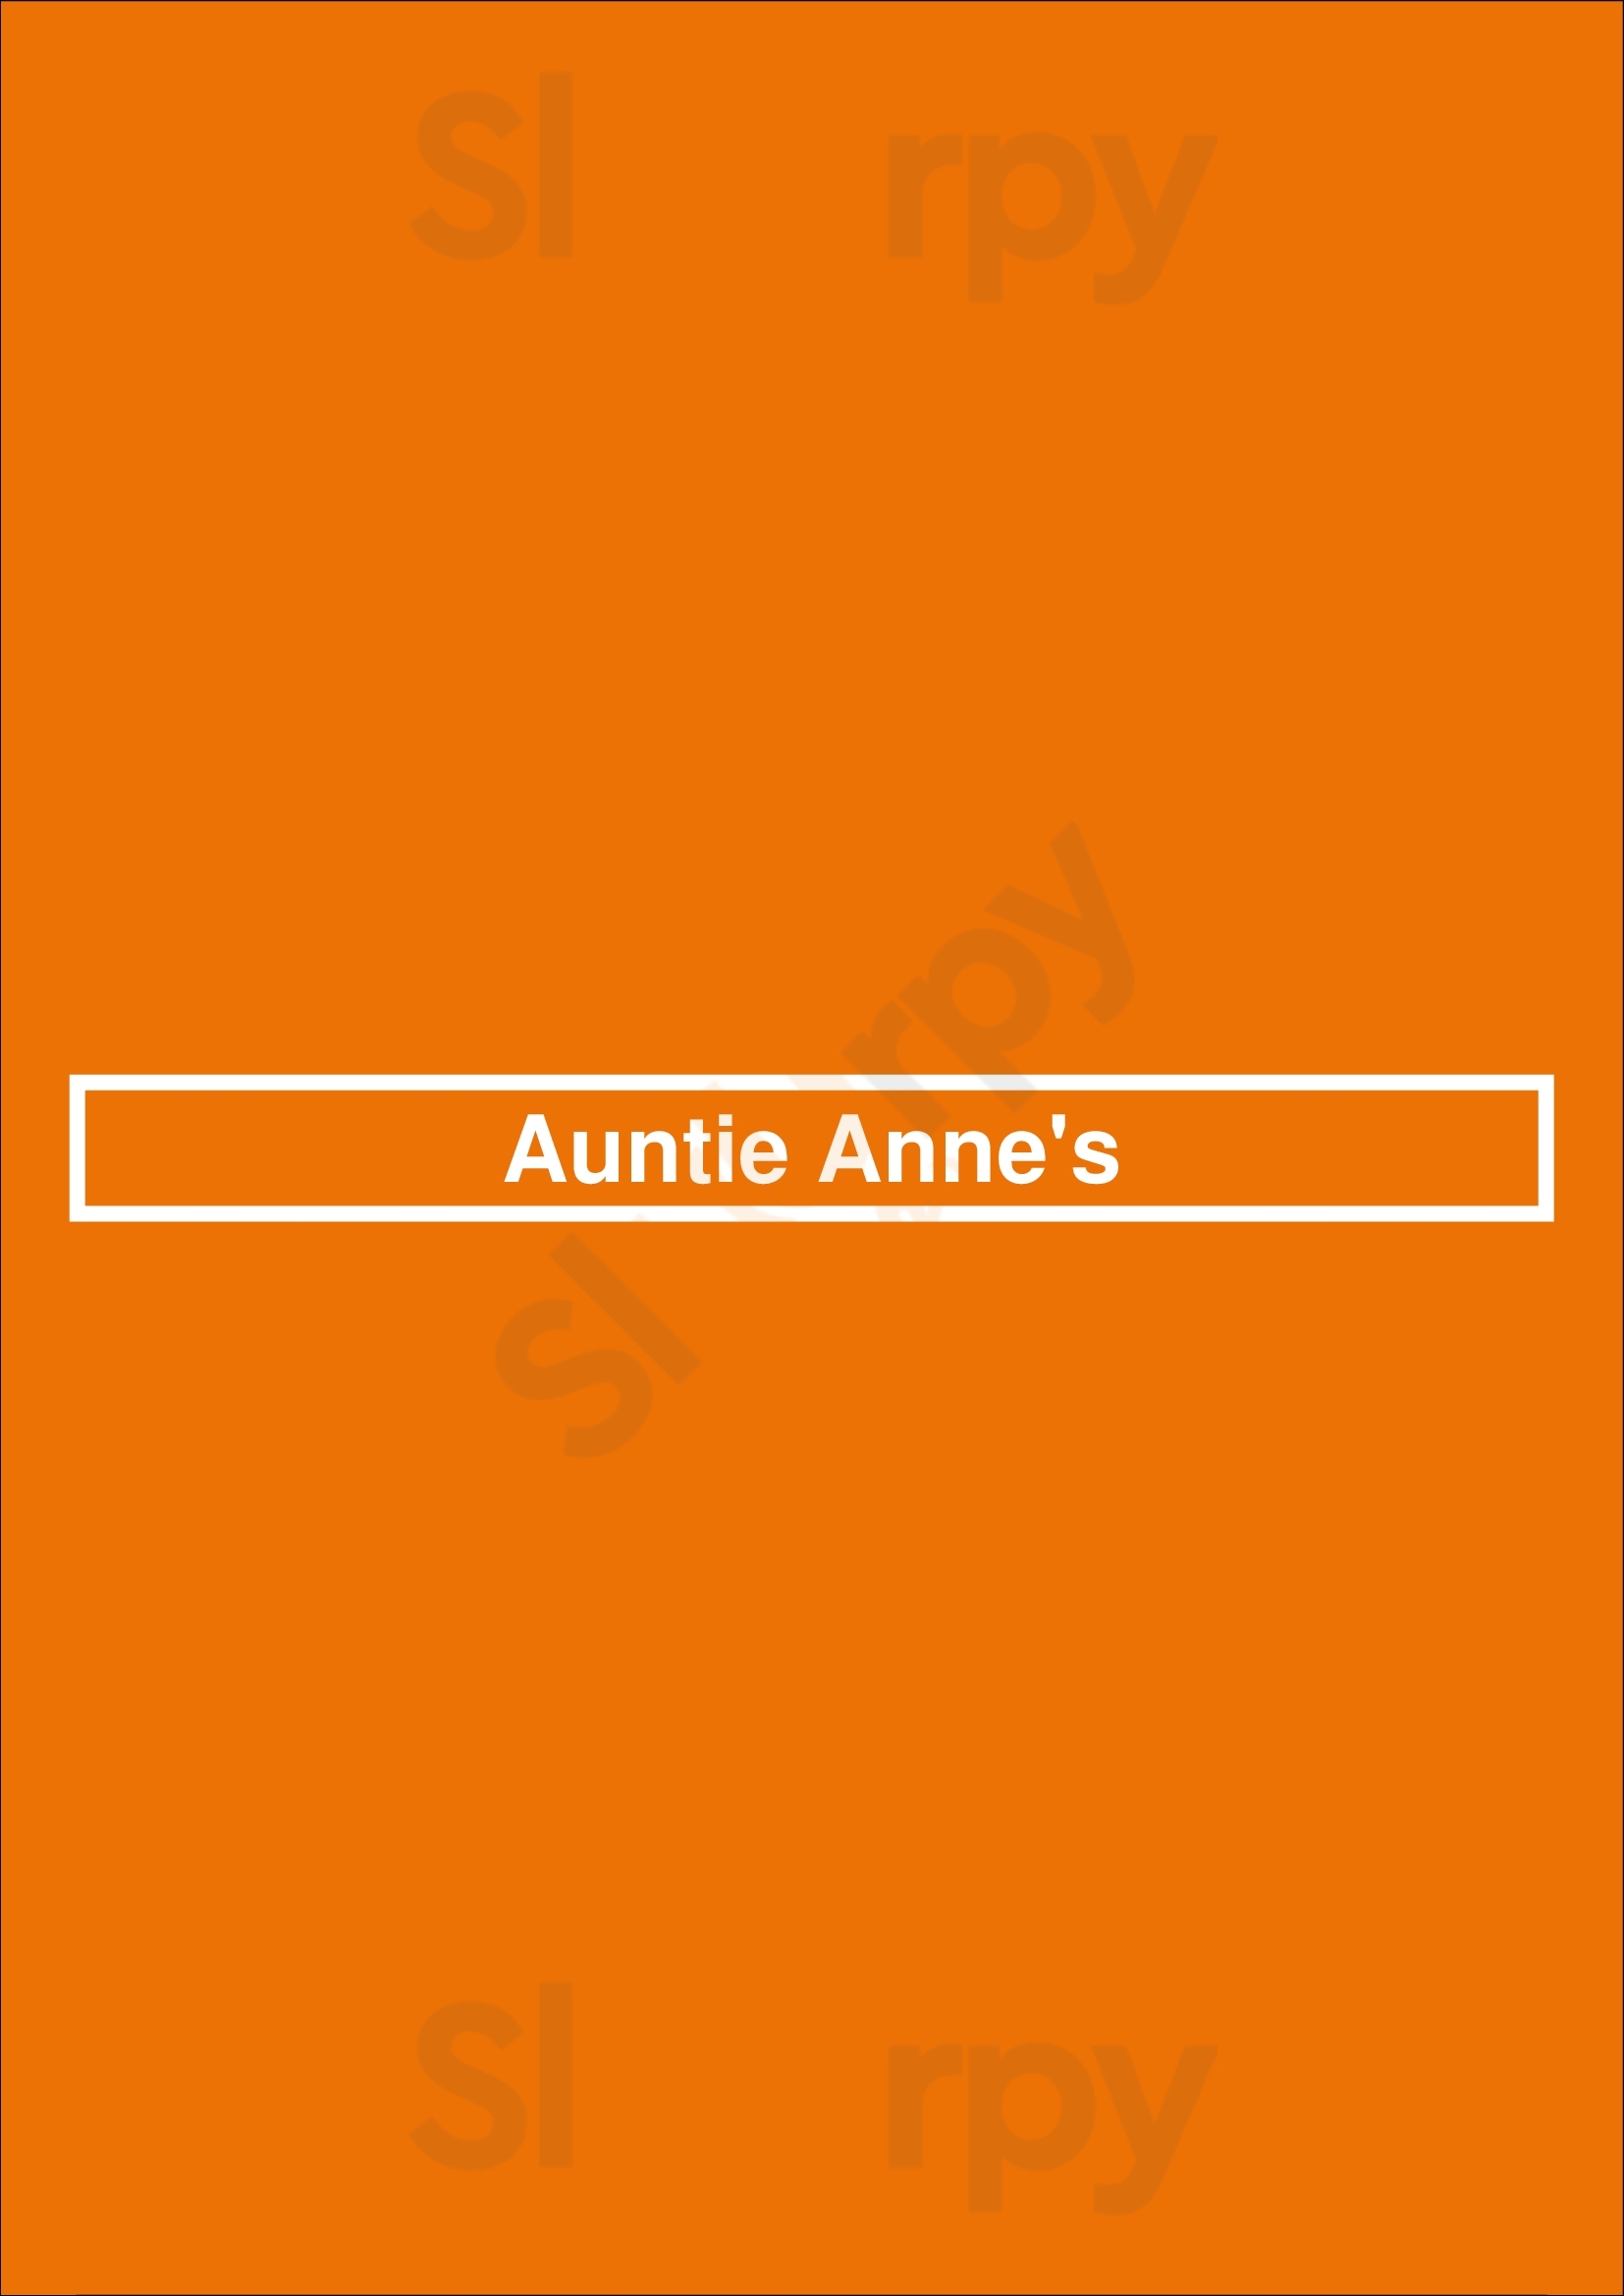 Auntie Anne's Saint Louis Menu - 1